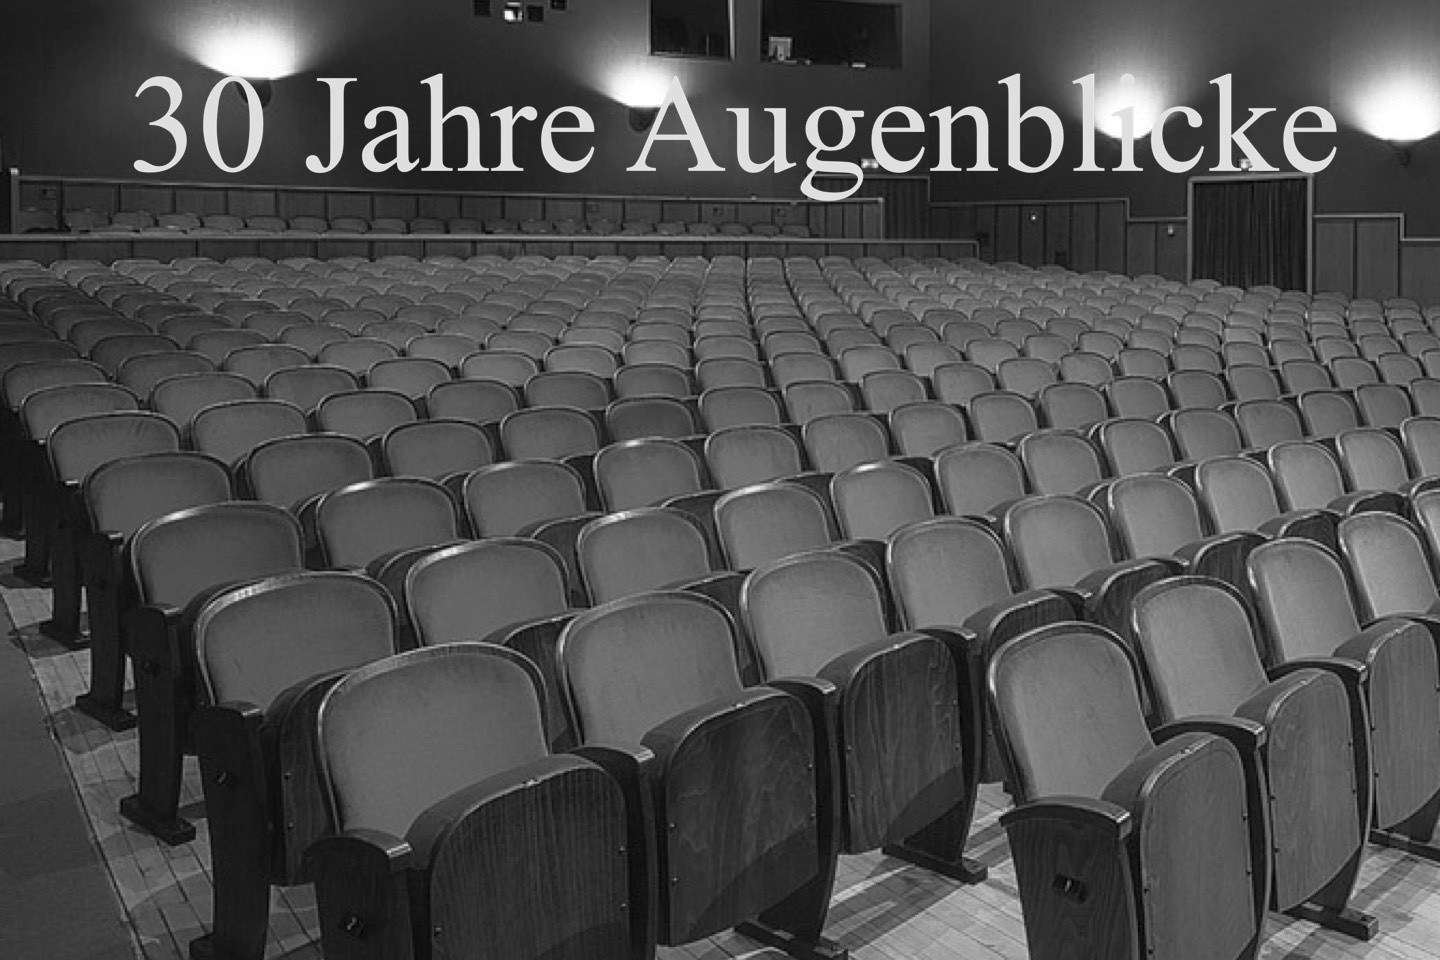 Haus der Fmilie,Theater am Wall,TAW,Warendorf,Stadt Warendorf,30 Jahre,Augenblicke ,Kurzfilme,